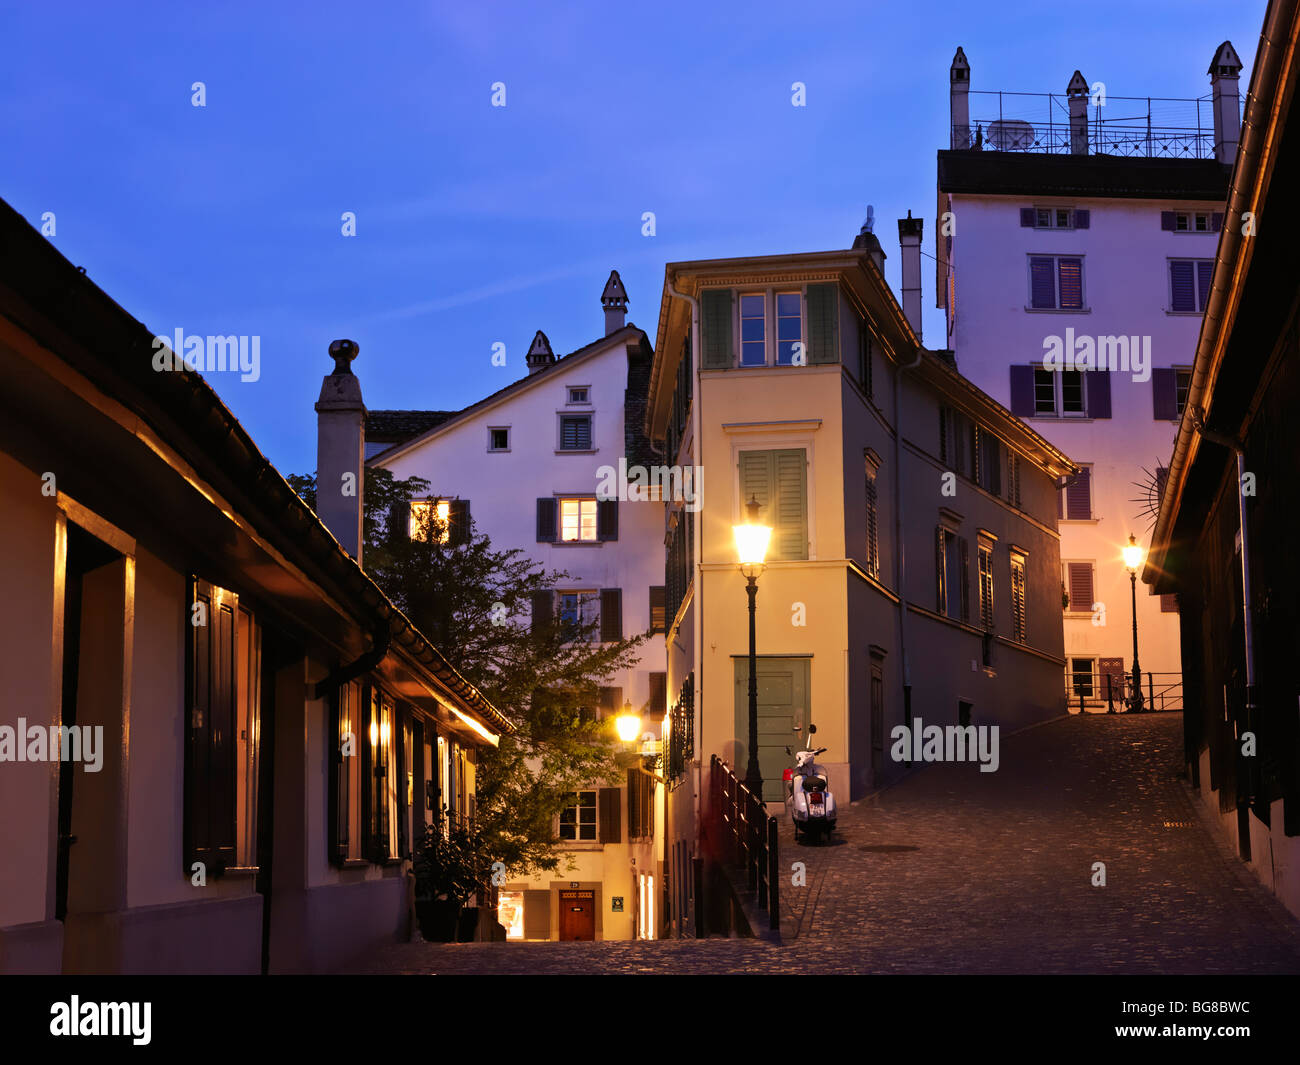 Switzerland, Zurich,street scene at dusk in Old Town of Zurich Stock Photo